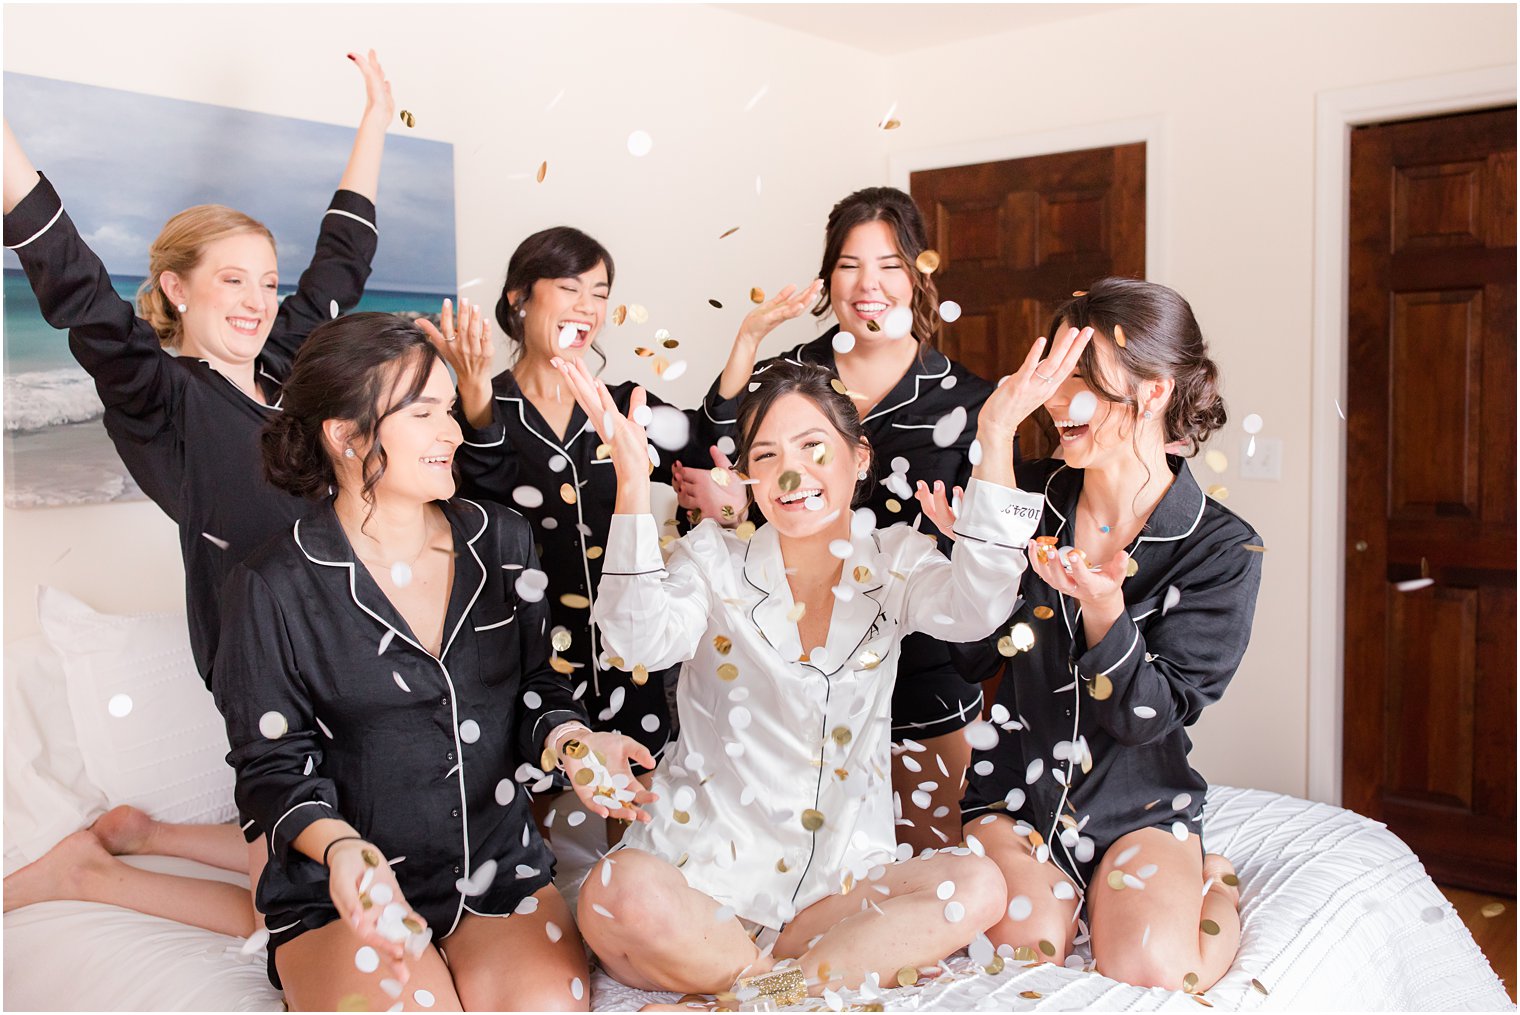 bride throws confetti with bridesmaids